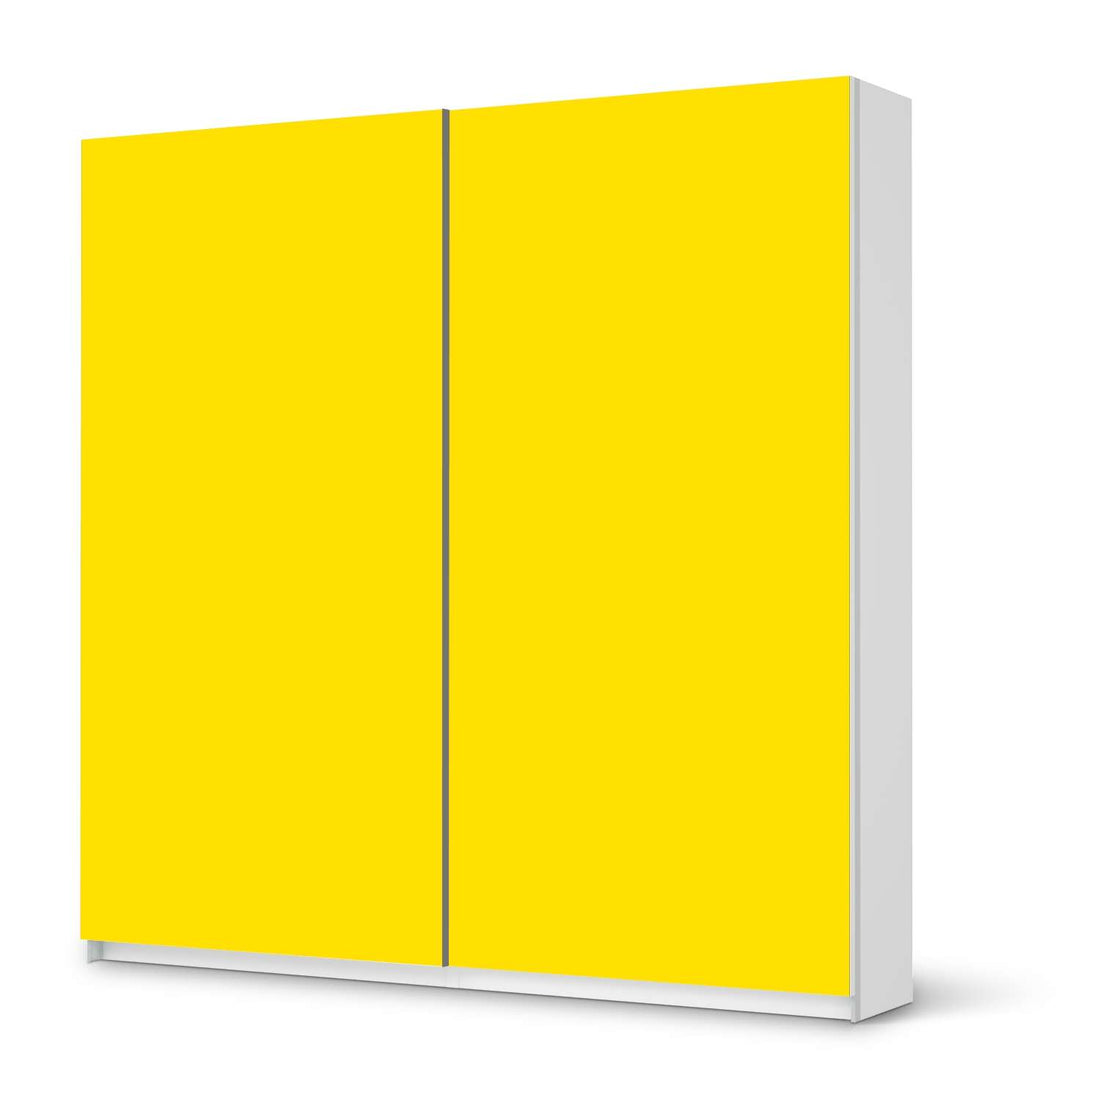 Möbel Klebefolie Gelb Dark - IKEA Pax Schrank 201 cm Höhe - Schiebetür - weiss